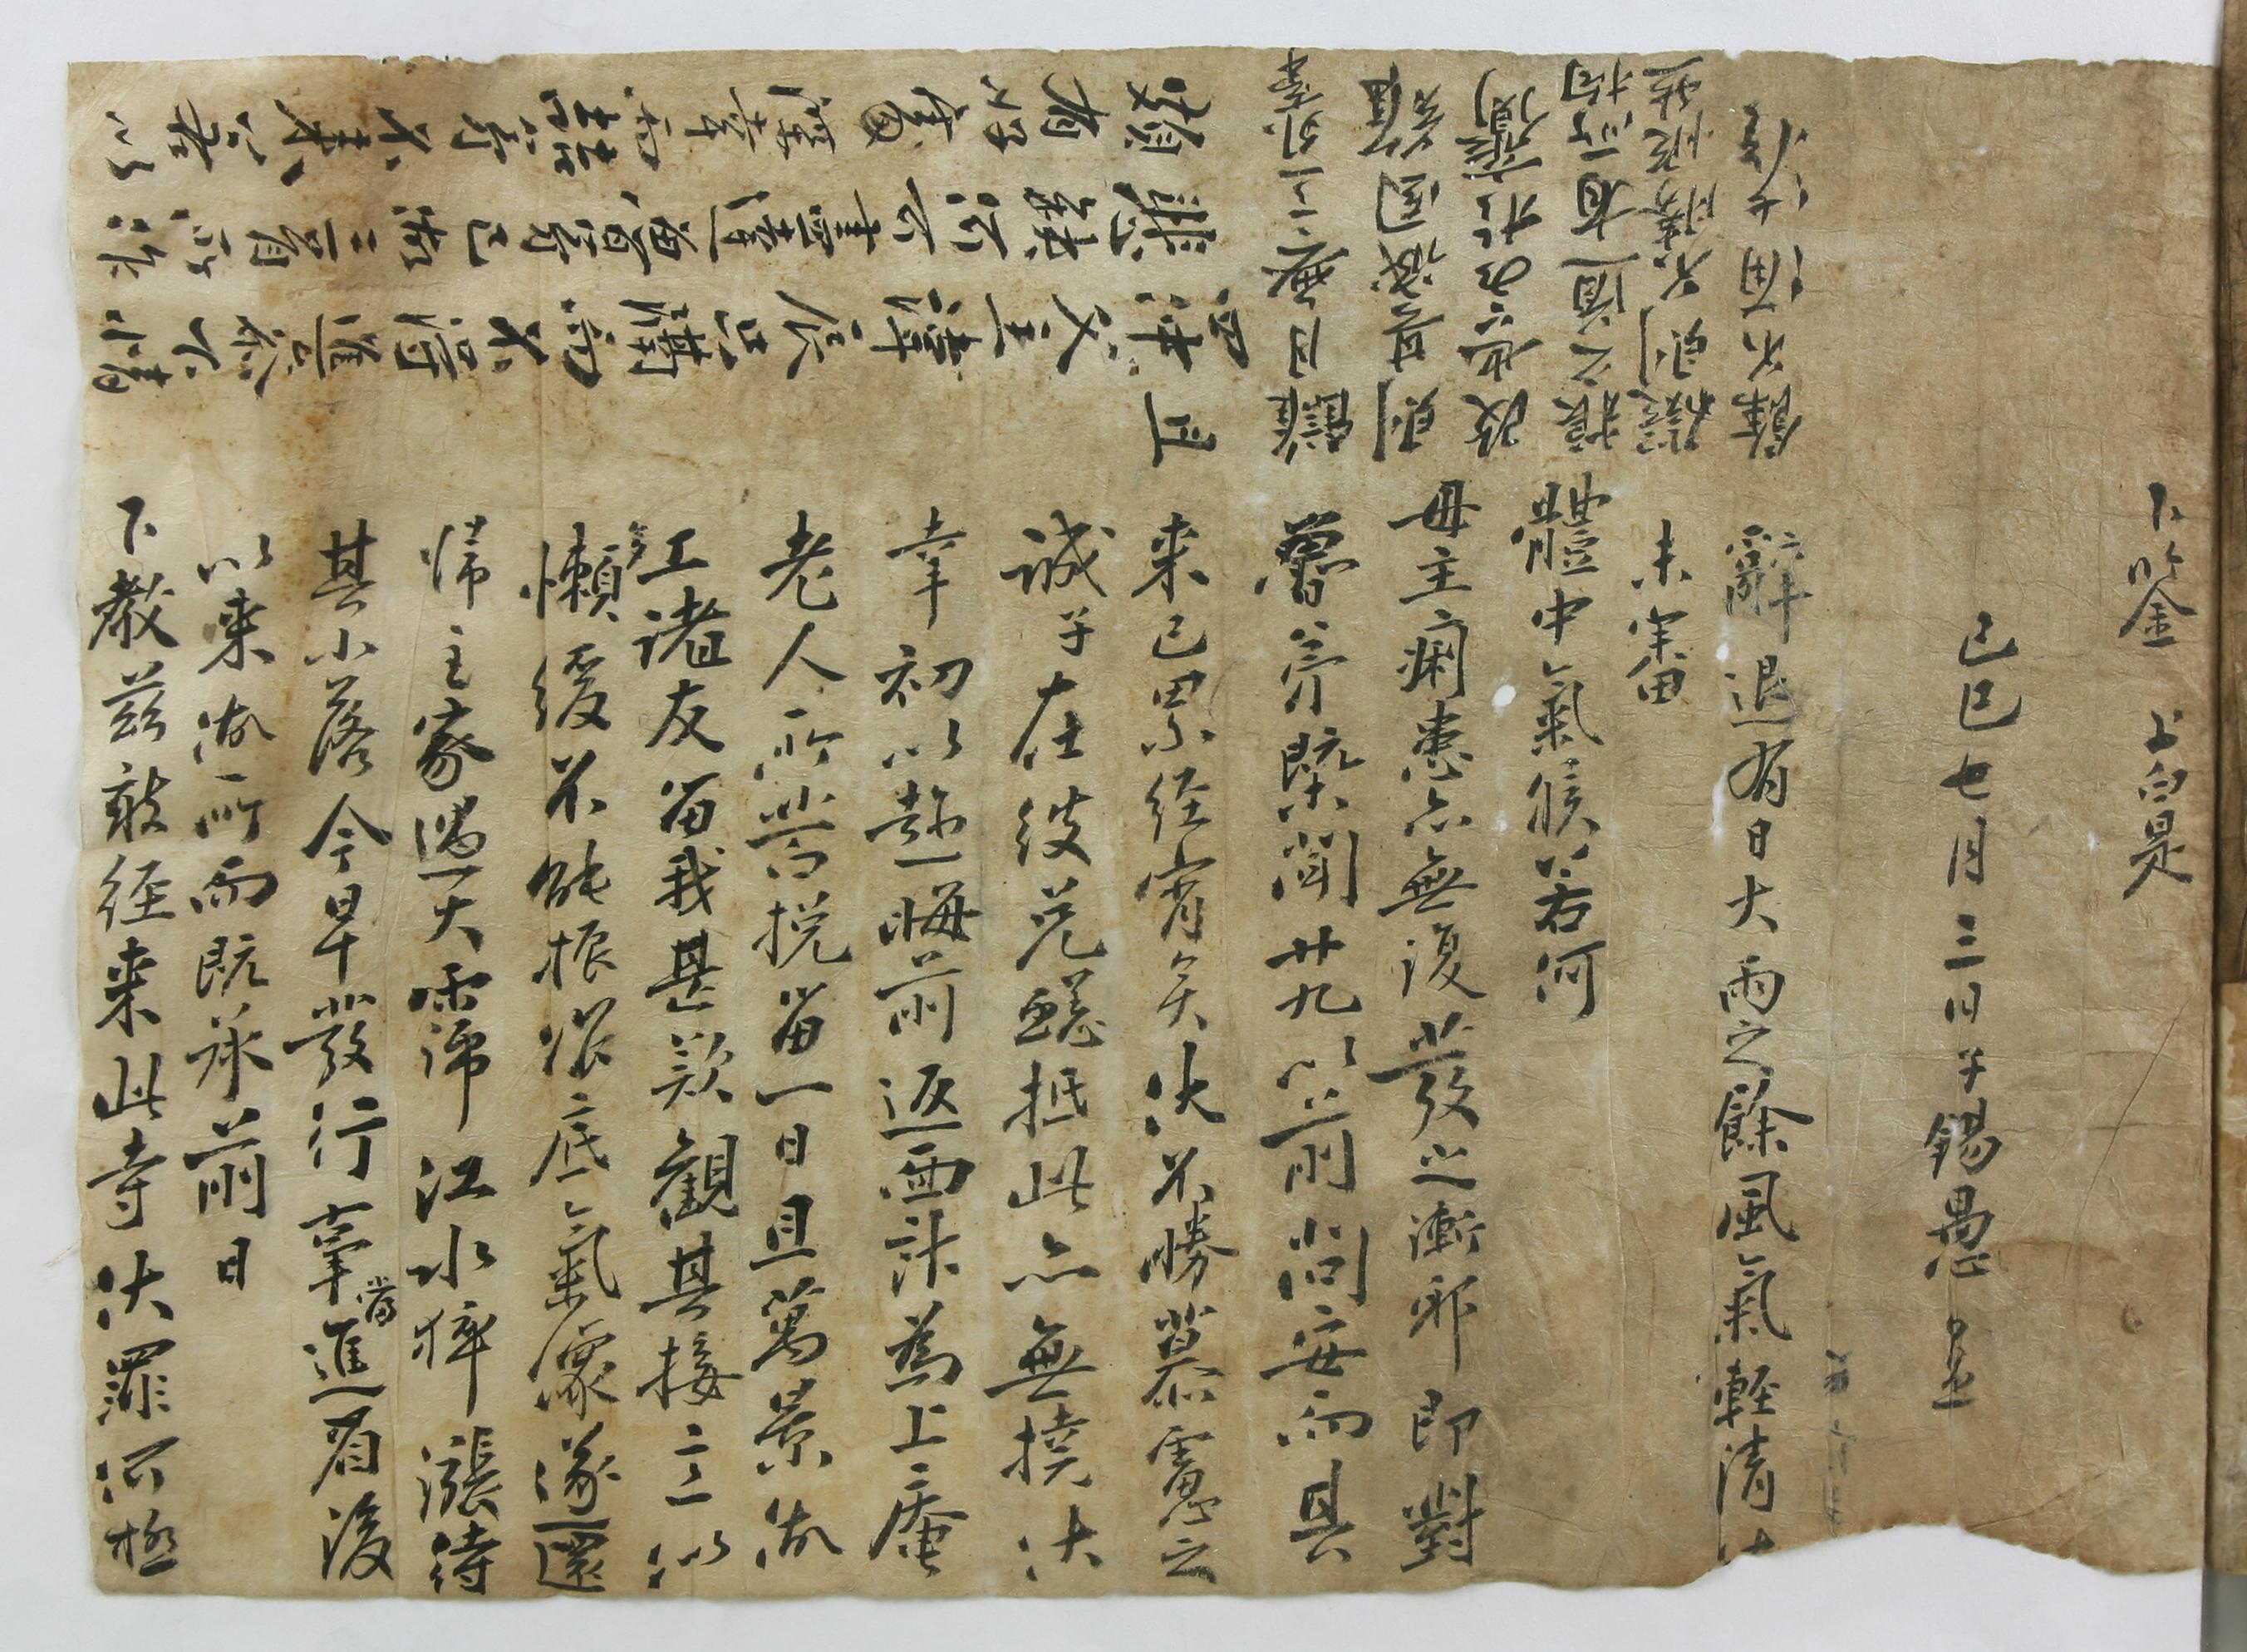 조석우(趙錫愚)가 1749년에 부모님께 올리는 답장